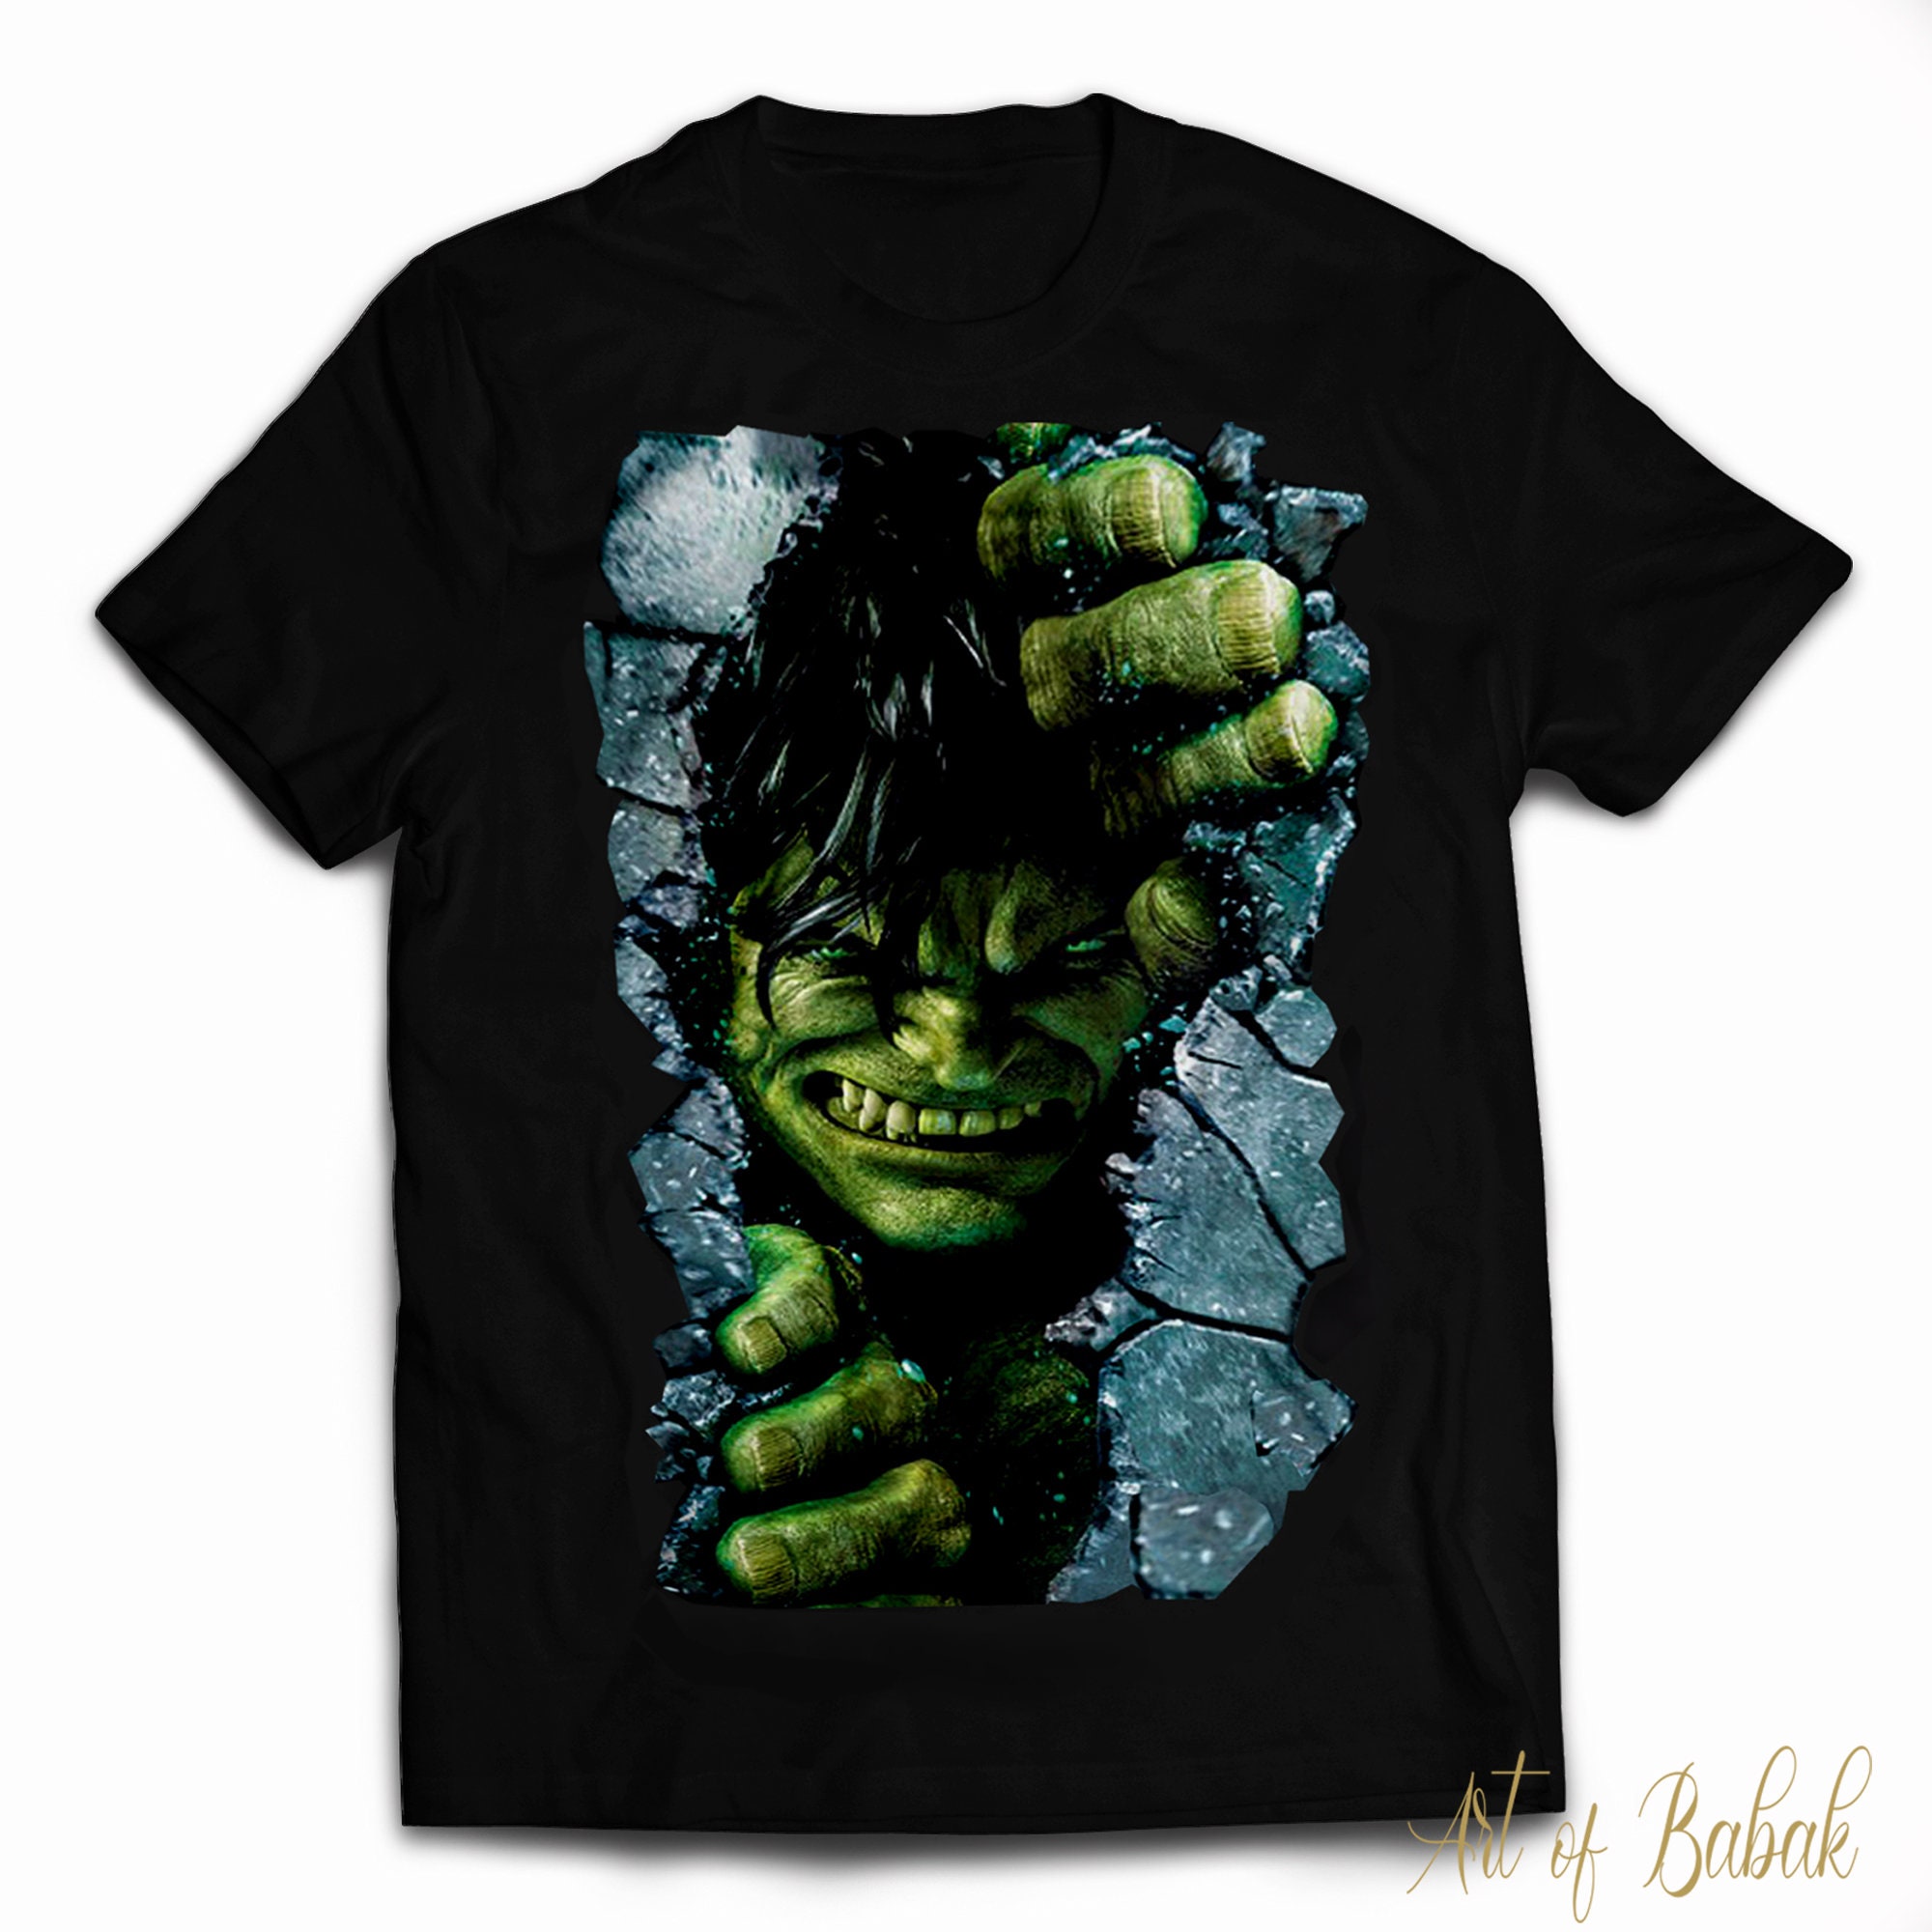 The Incredible Hulk T-Shirt, Angry Hulk T-Shirt, Marvel The Incredible Hulk Shirts